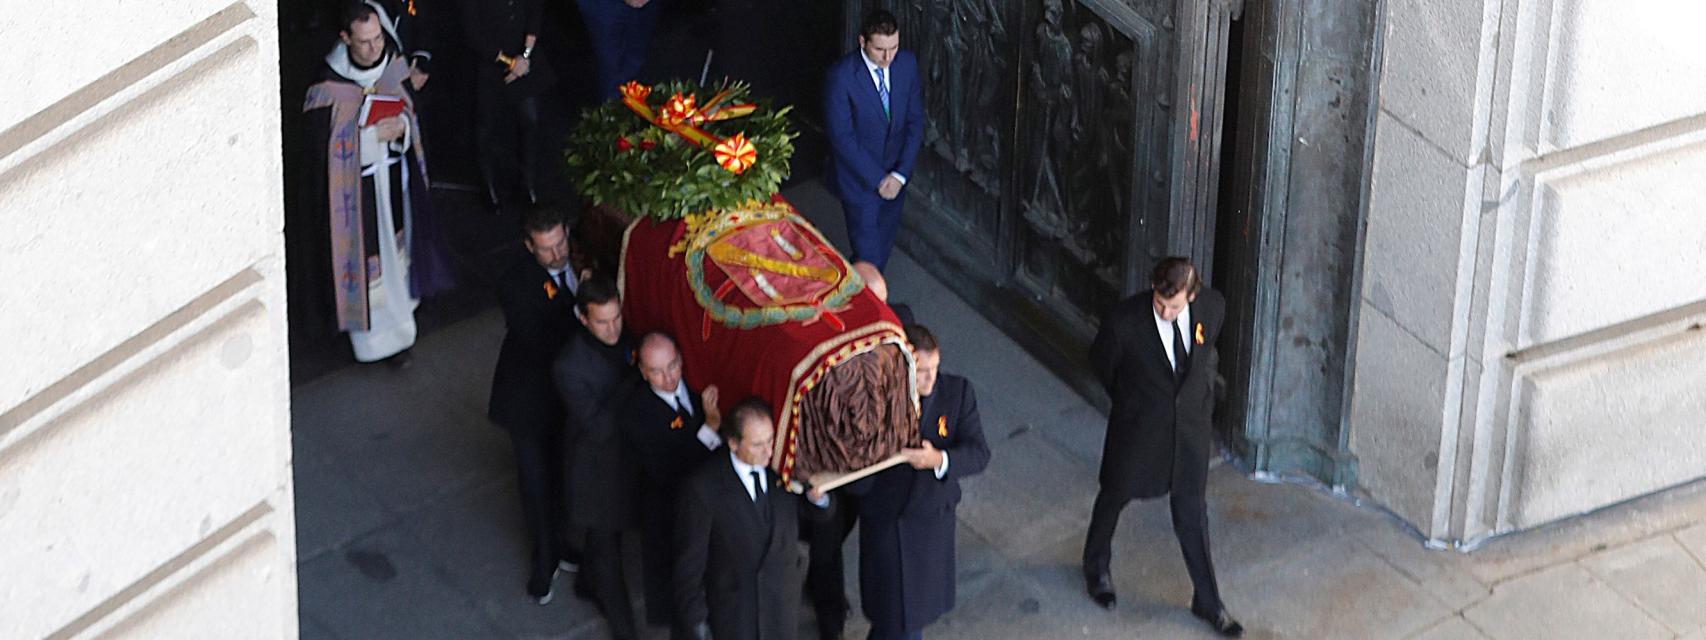 Los familiares de Franco portan el féretro con los restos mortales del dictador tras su exhumación.